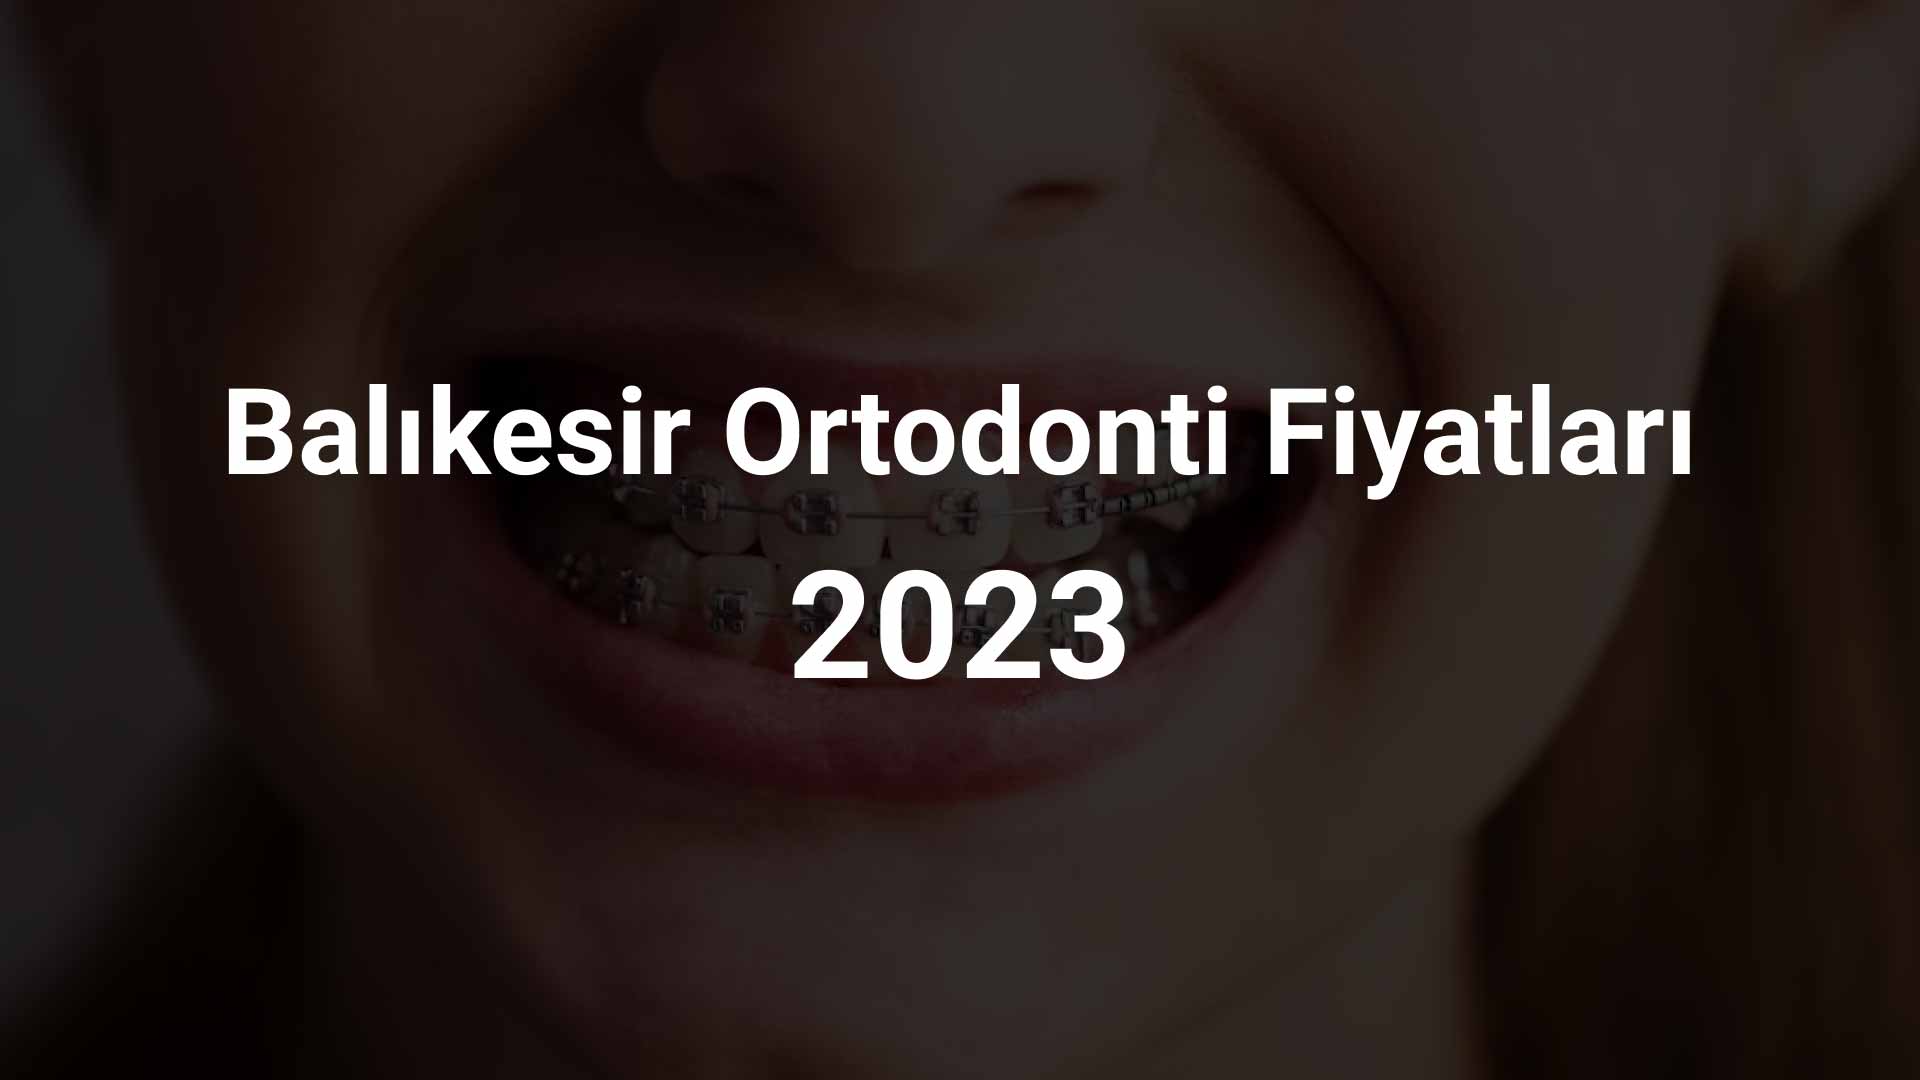 Balıkesir Ortodonti Fiyatları 2023